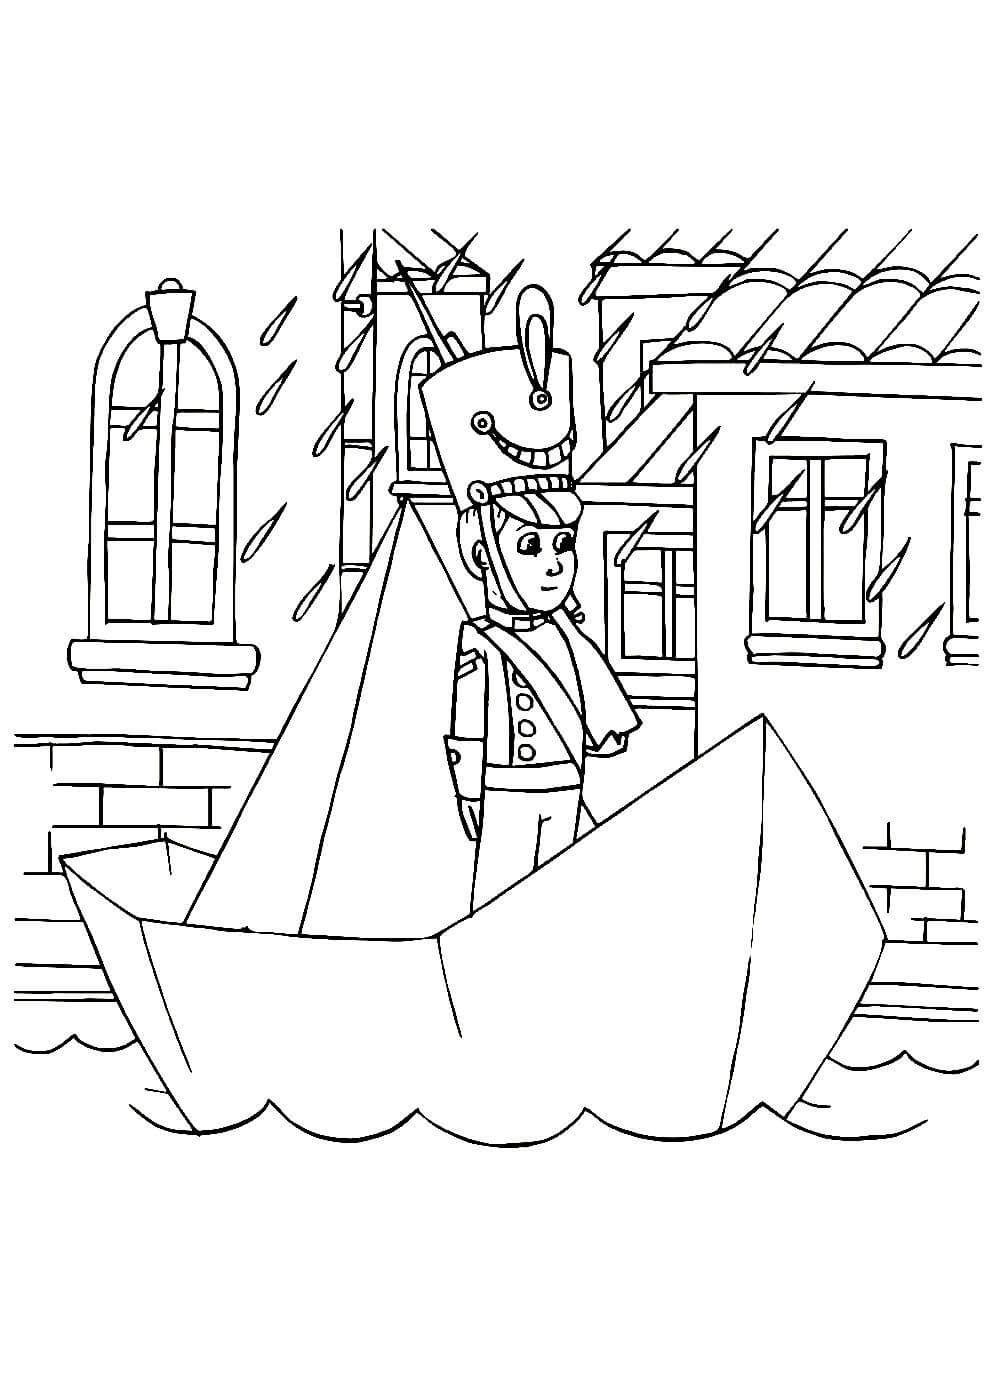 Рисунок к сказке Г.Х.Андерсена «Стойкий оловянный солдатик». Выполнила: Ведяйкина Эрика Фанилевна